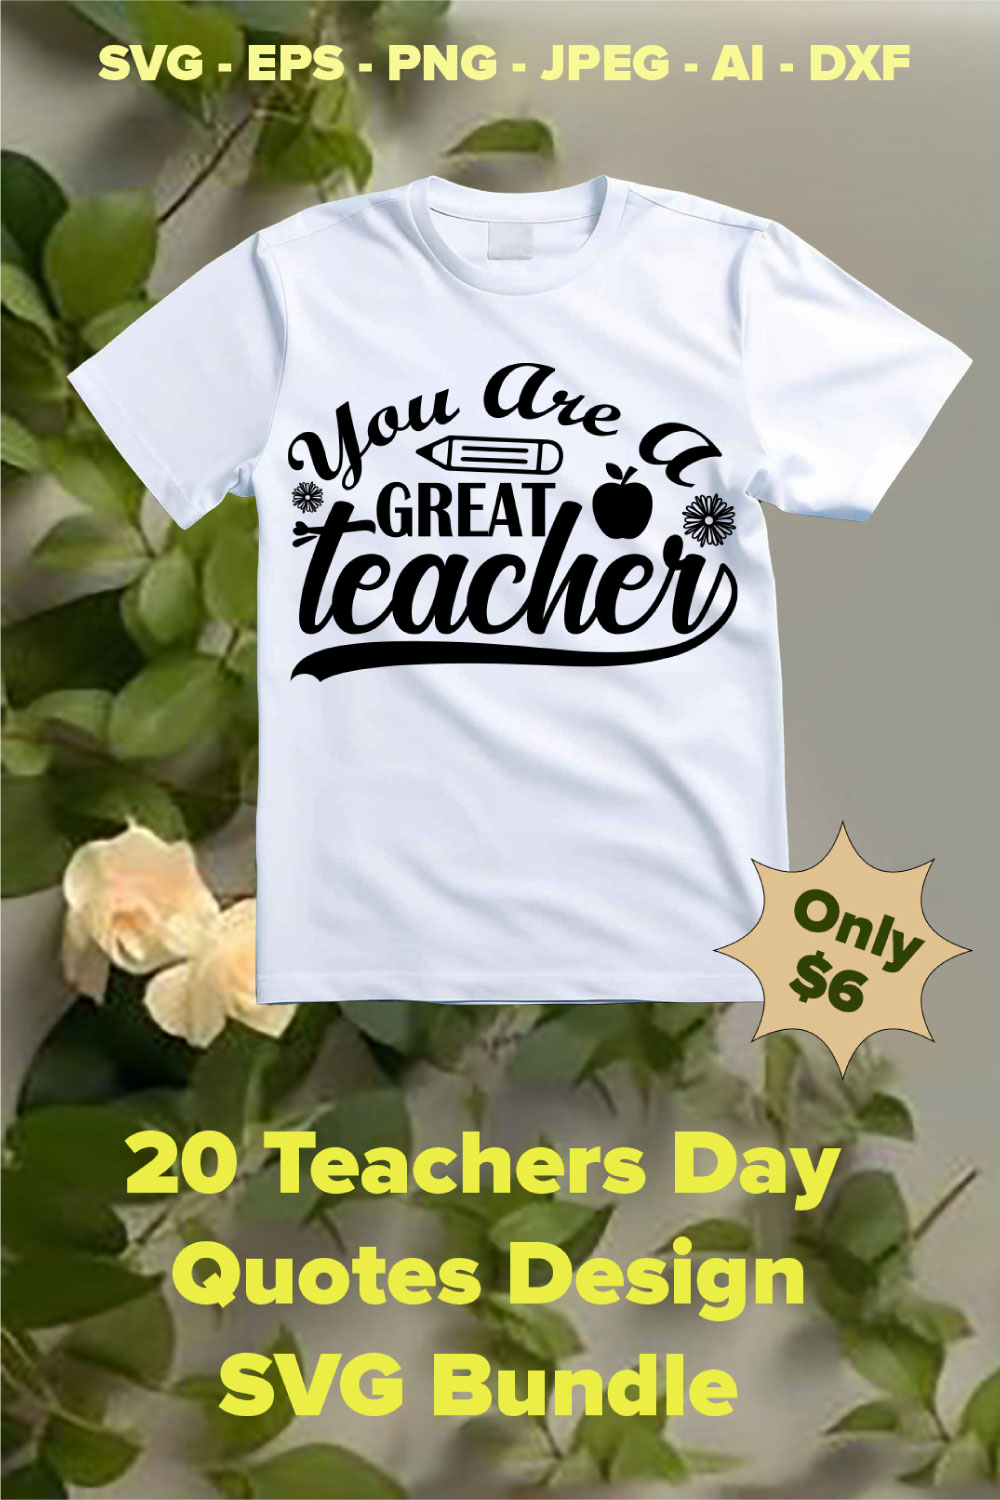 20 Teachers Day Quotes Design SVG Bundle pinterest preview image.